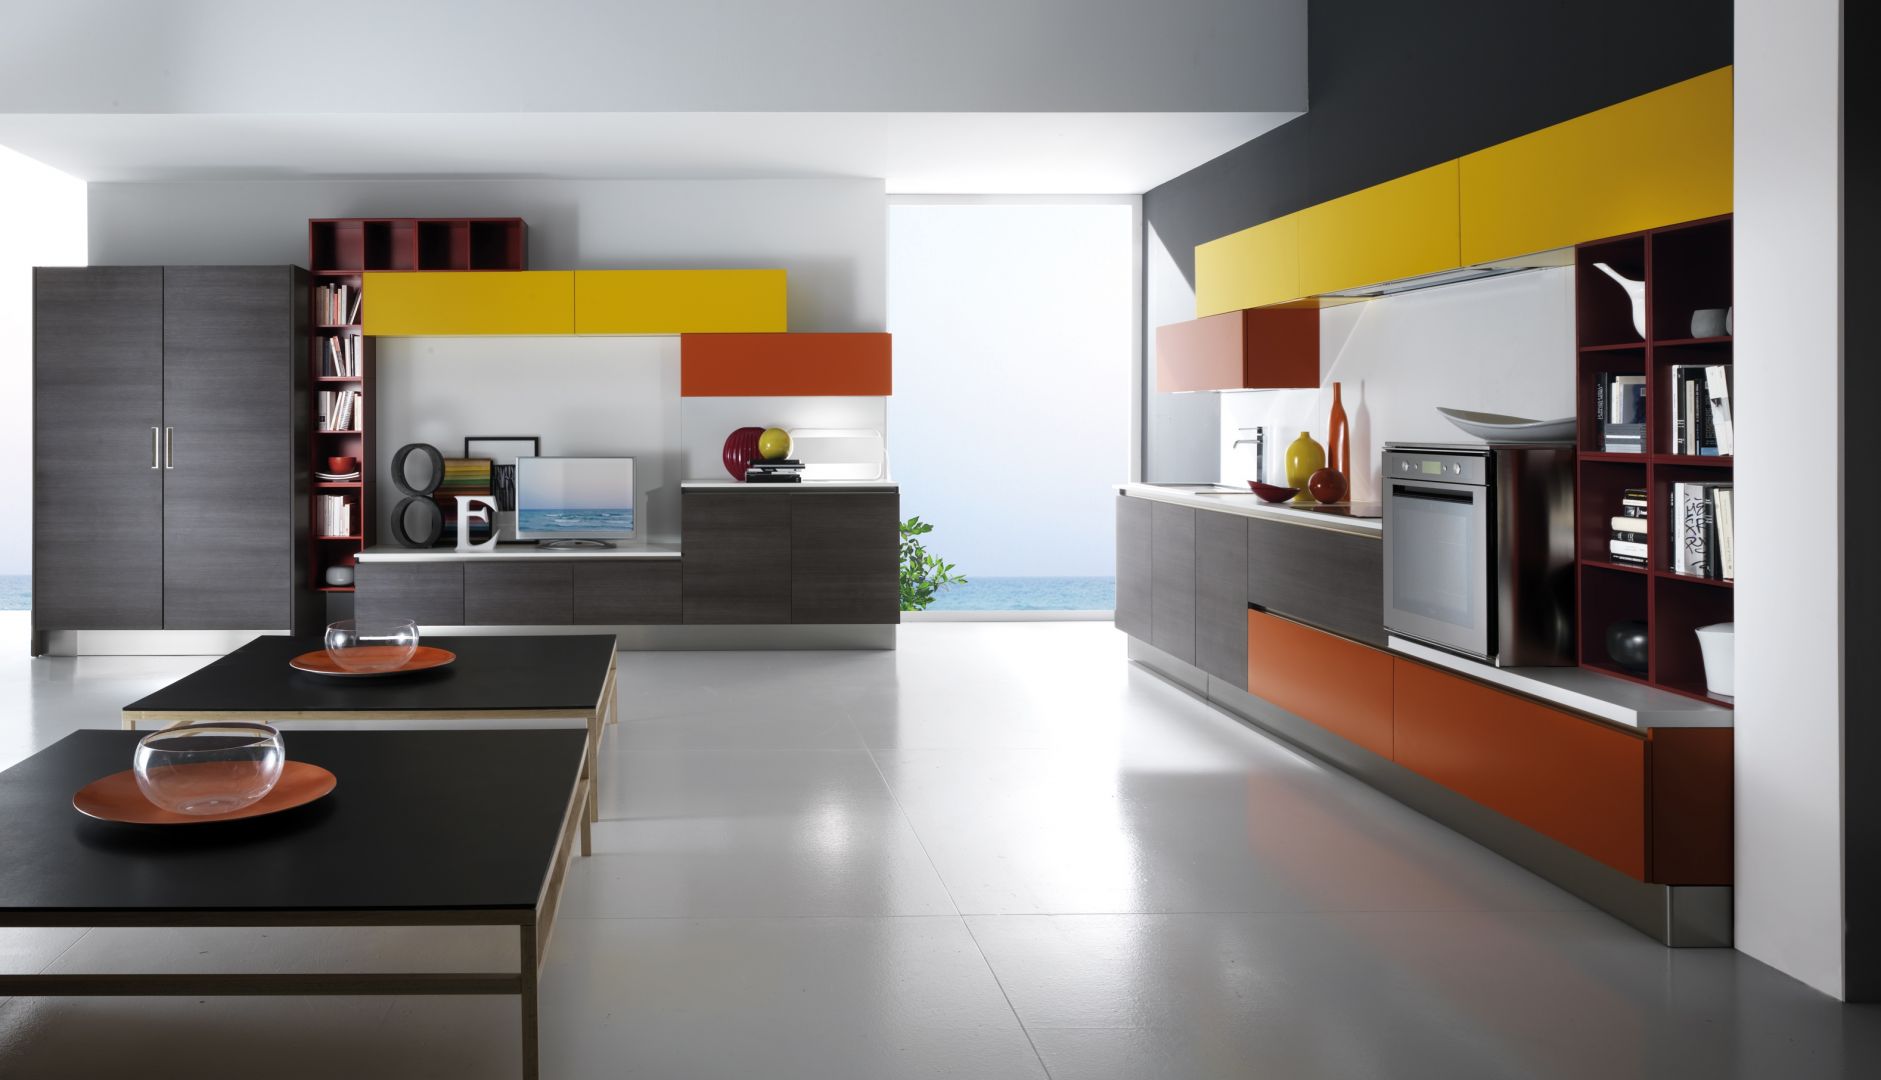 Zastosowanie analogicznych kolorów w meblach kuchennych i salonowych pozwoli stworzyć harmonijną całość. Fot. Biefbi